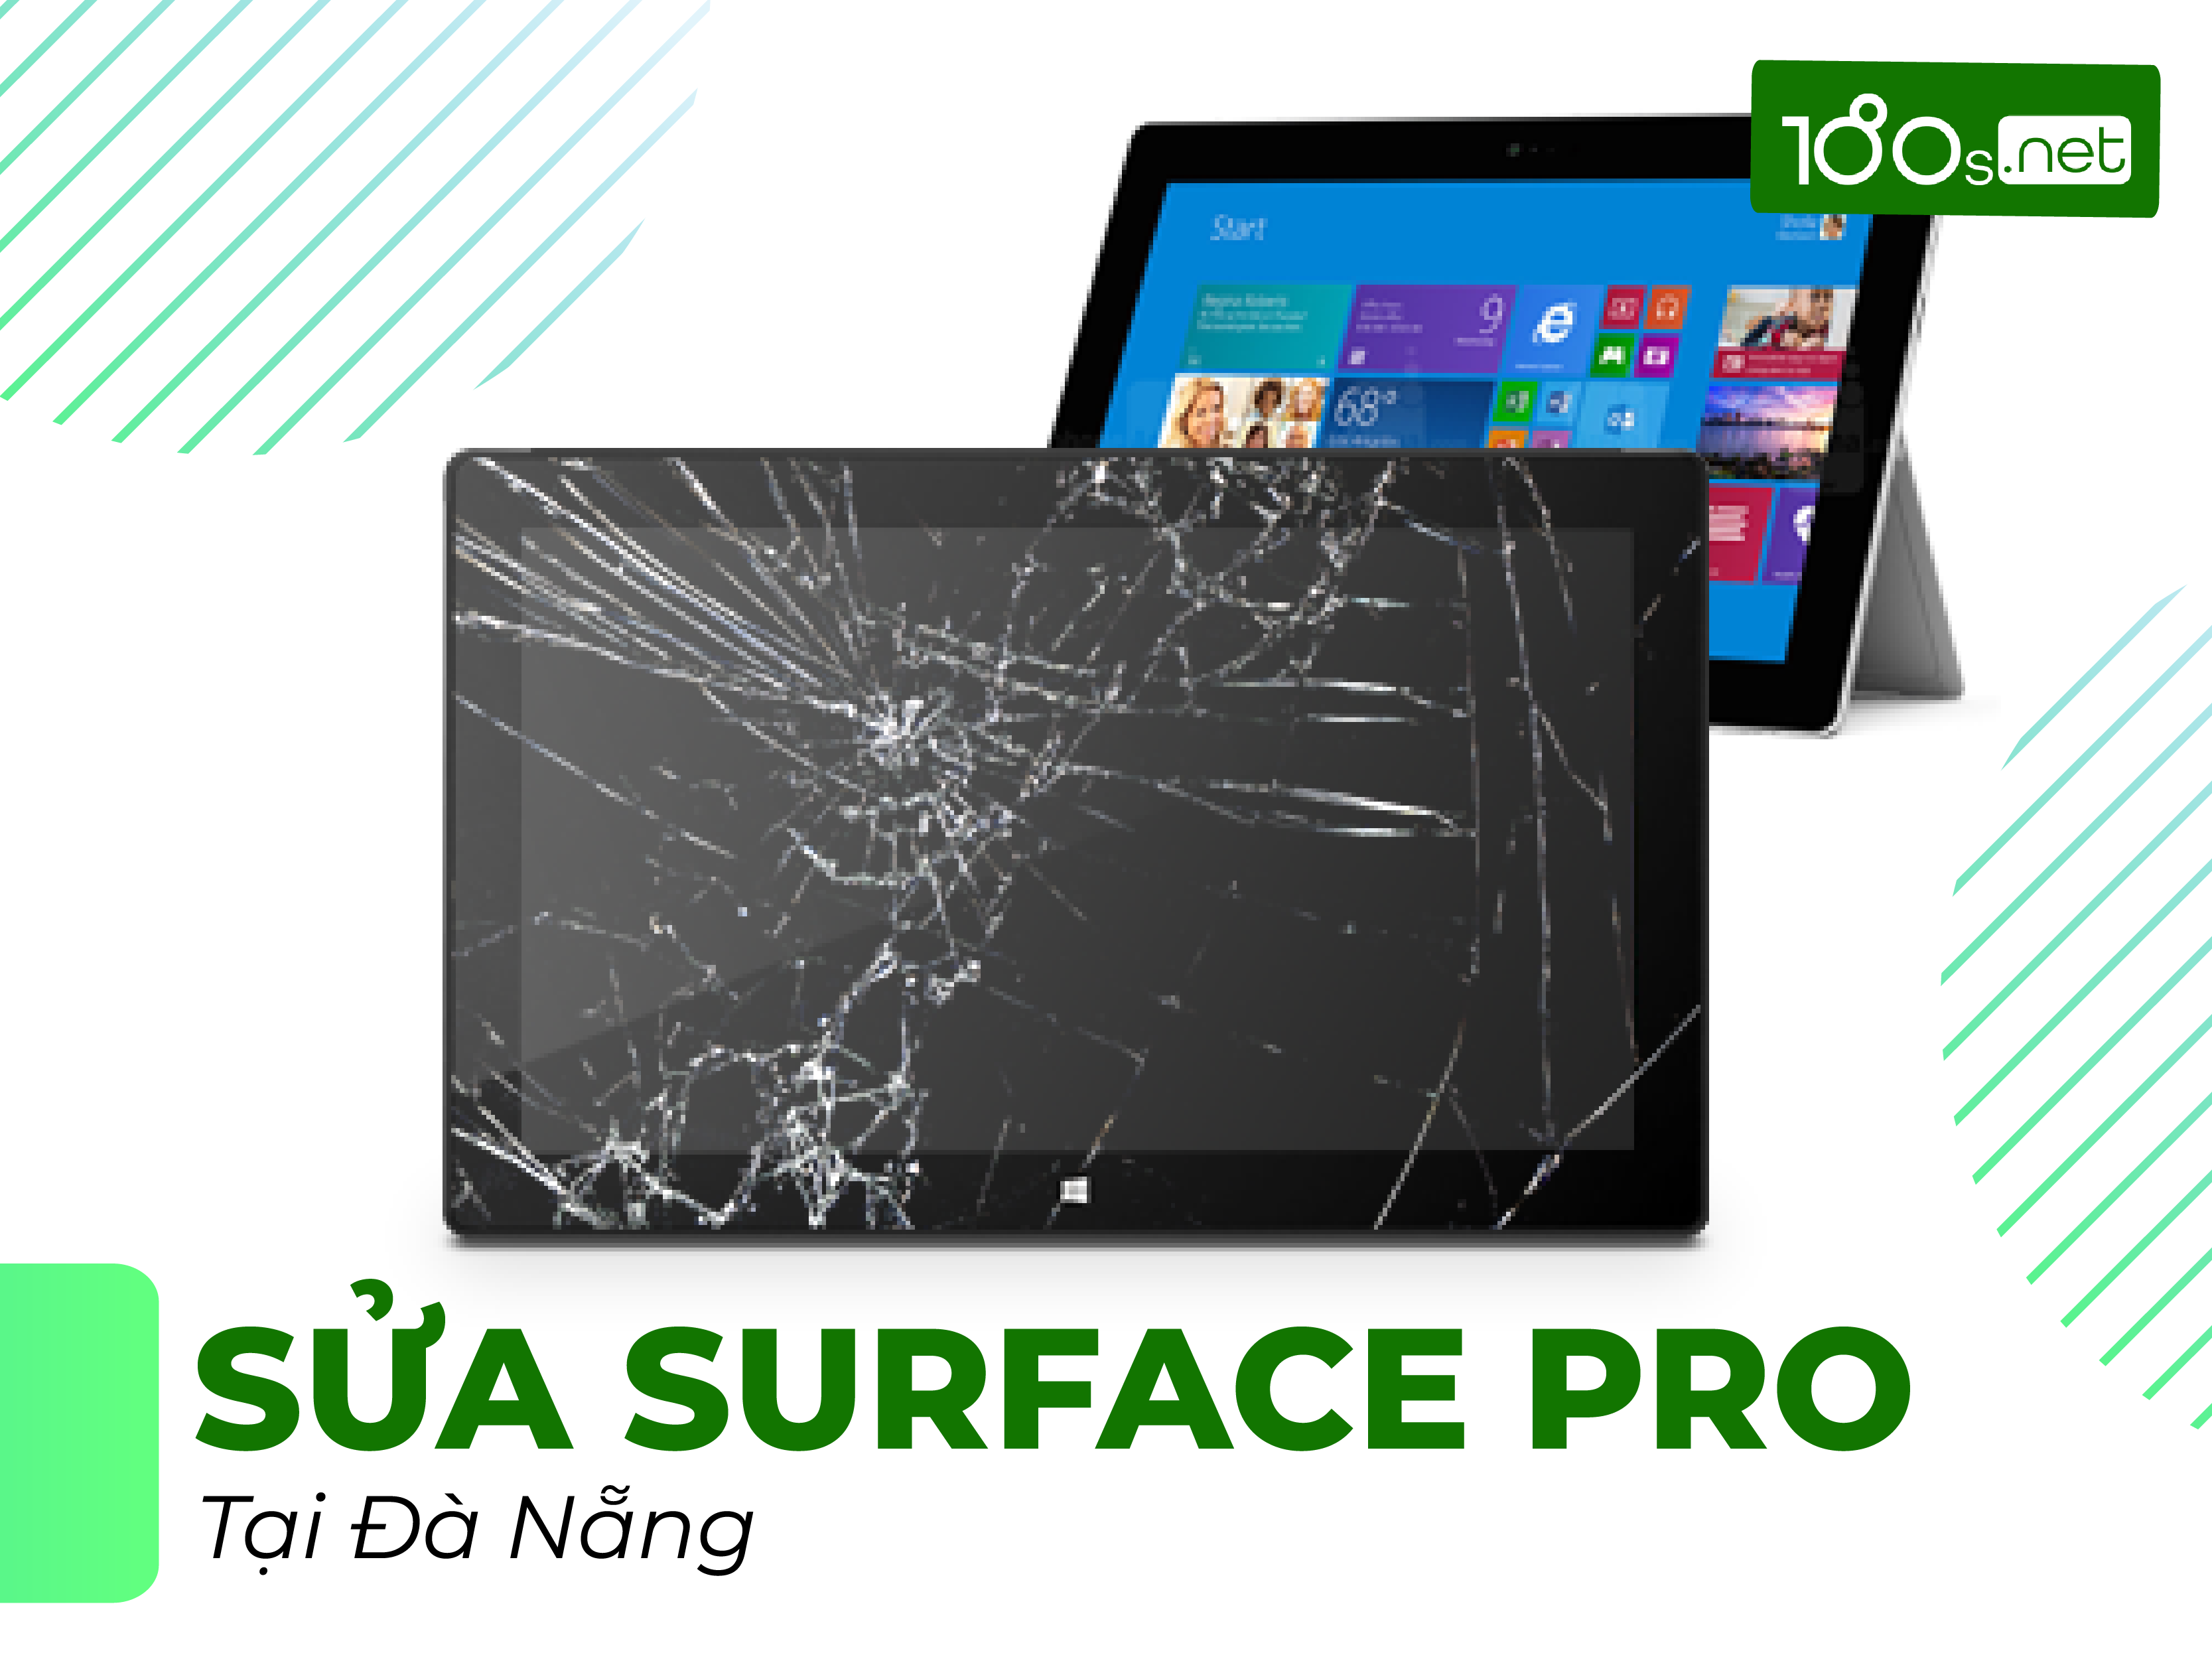 Sửa Surface Pro Đà Nẵng